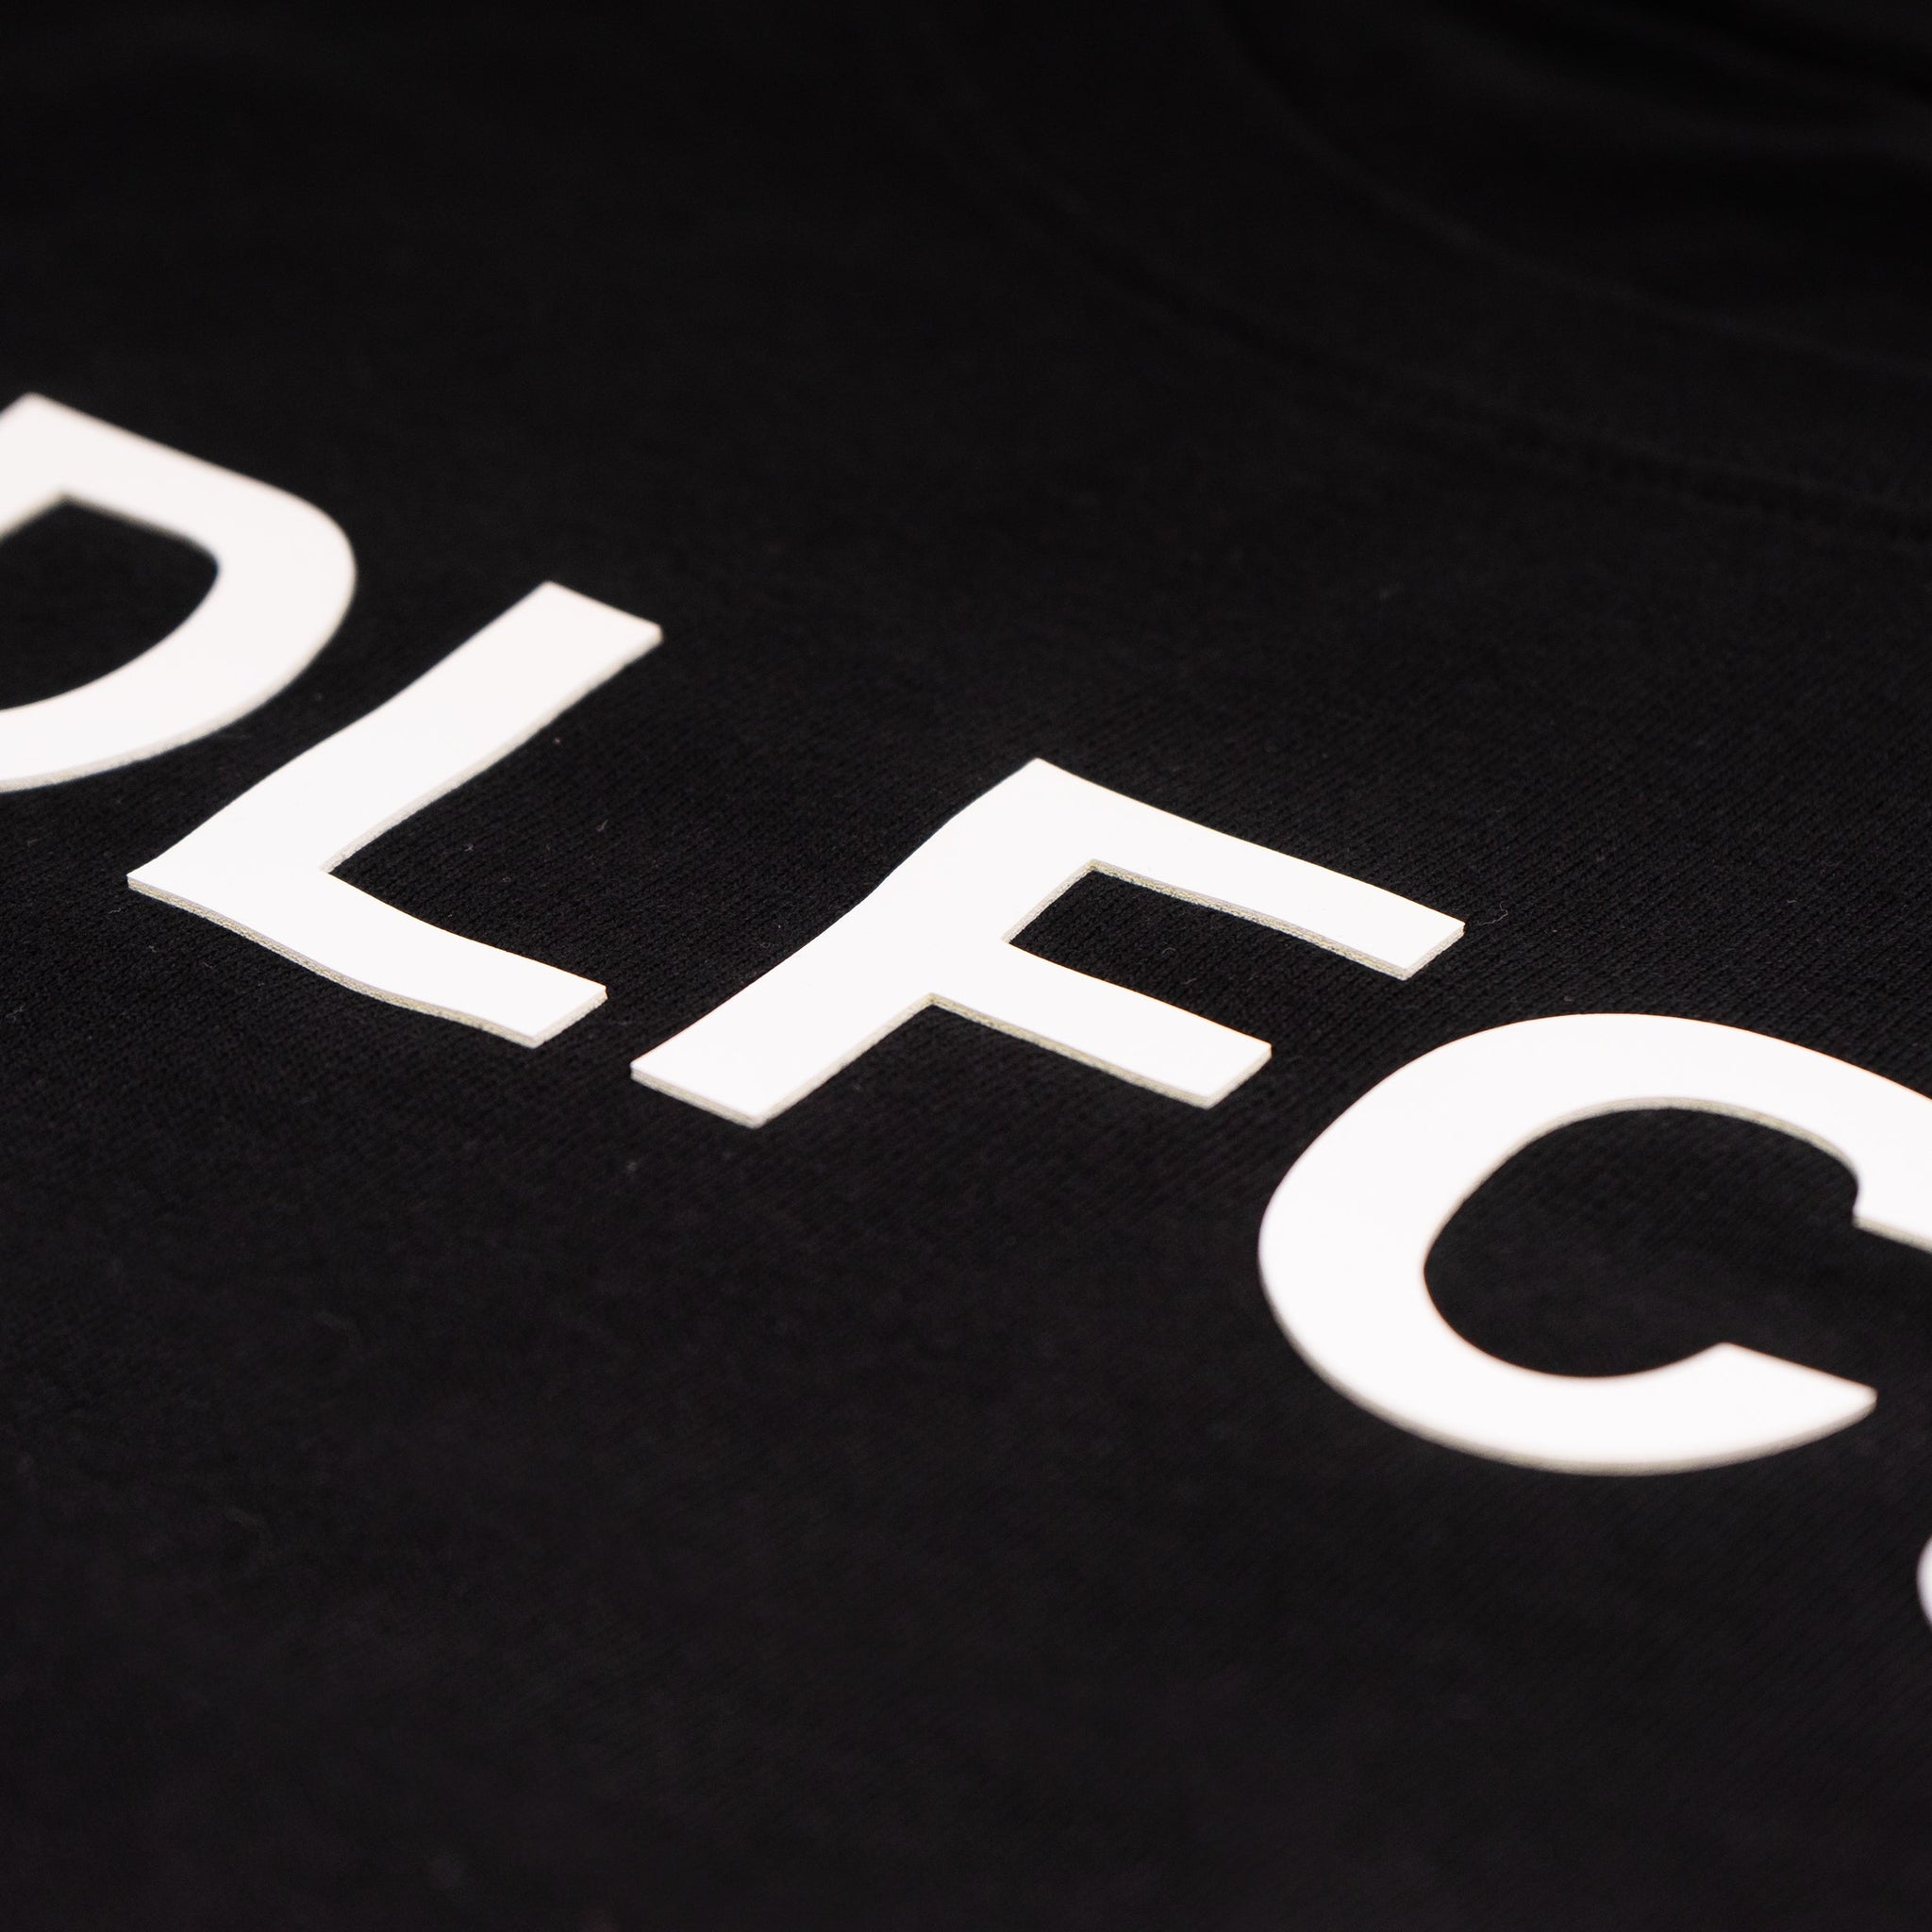 Camiseta DLFC 600 - Black/White - Dellafuente F.C.